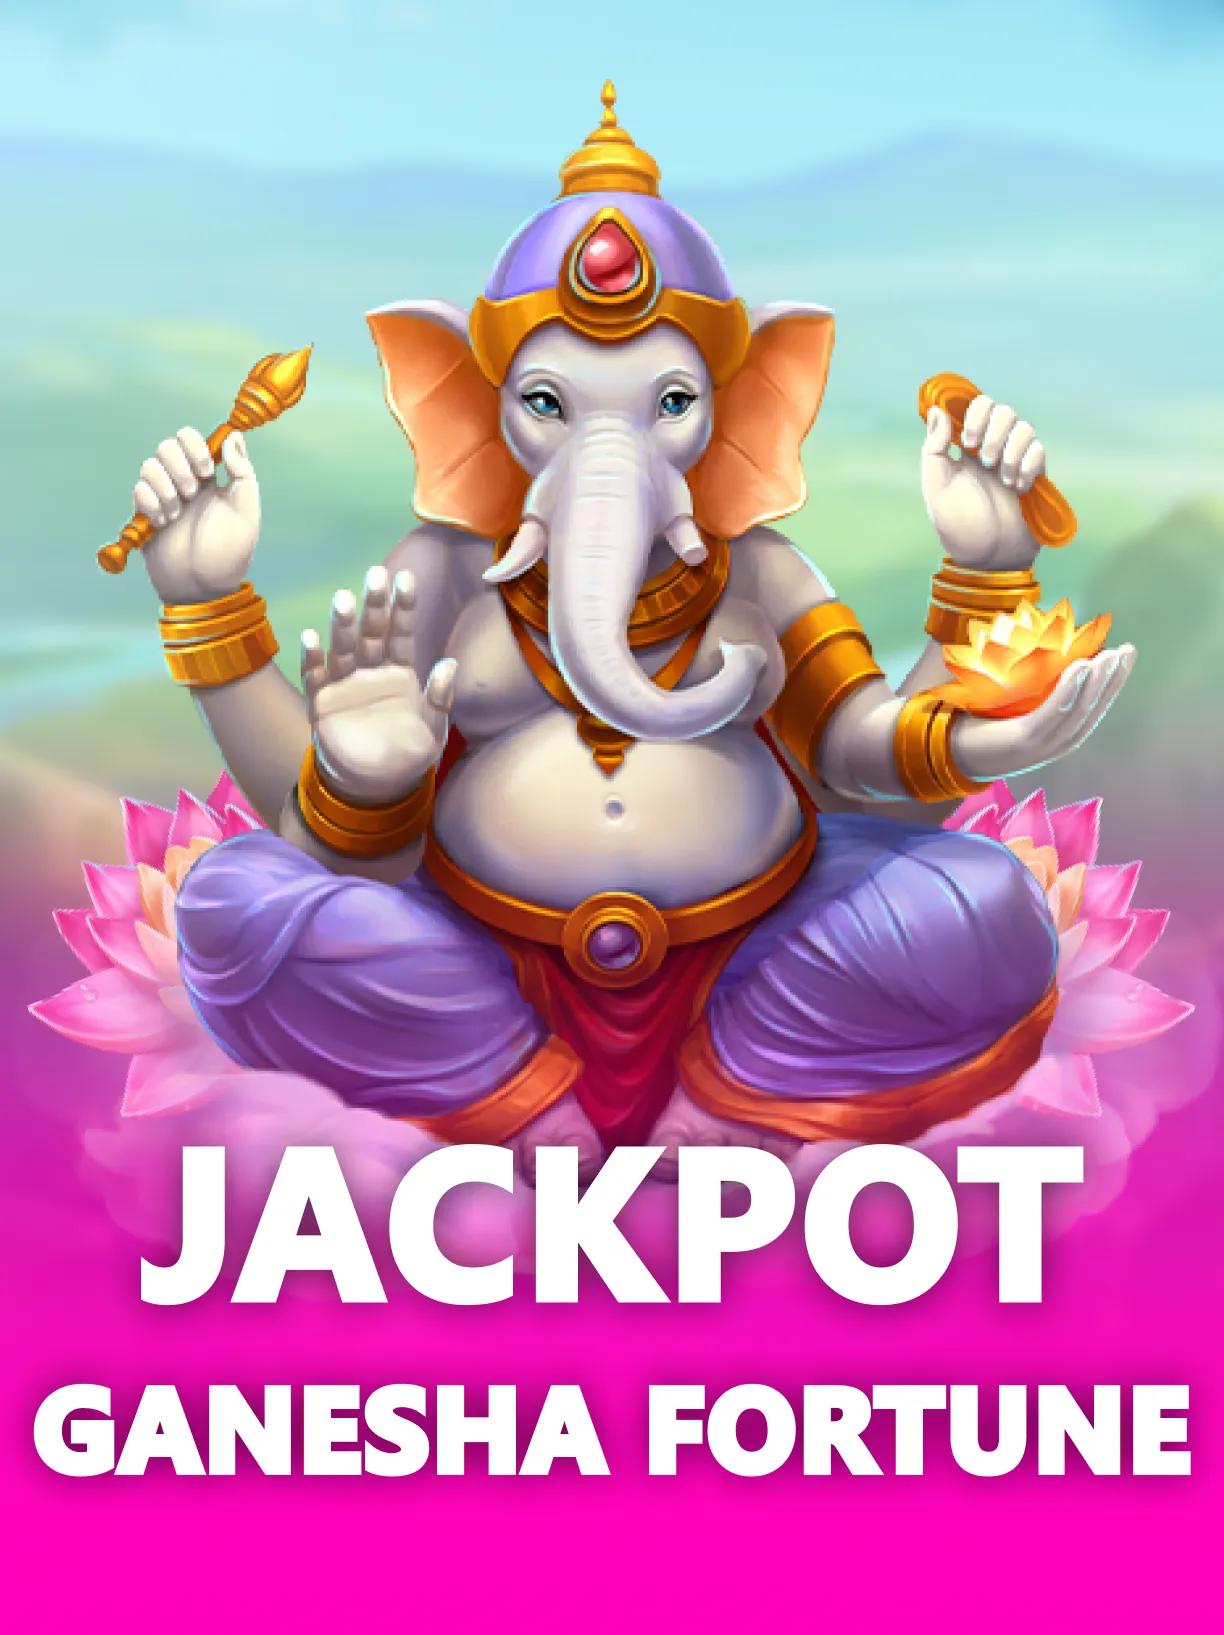 dl-Jackpot-Ganesha-Fortune-square.webp